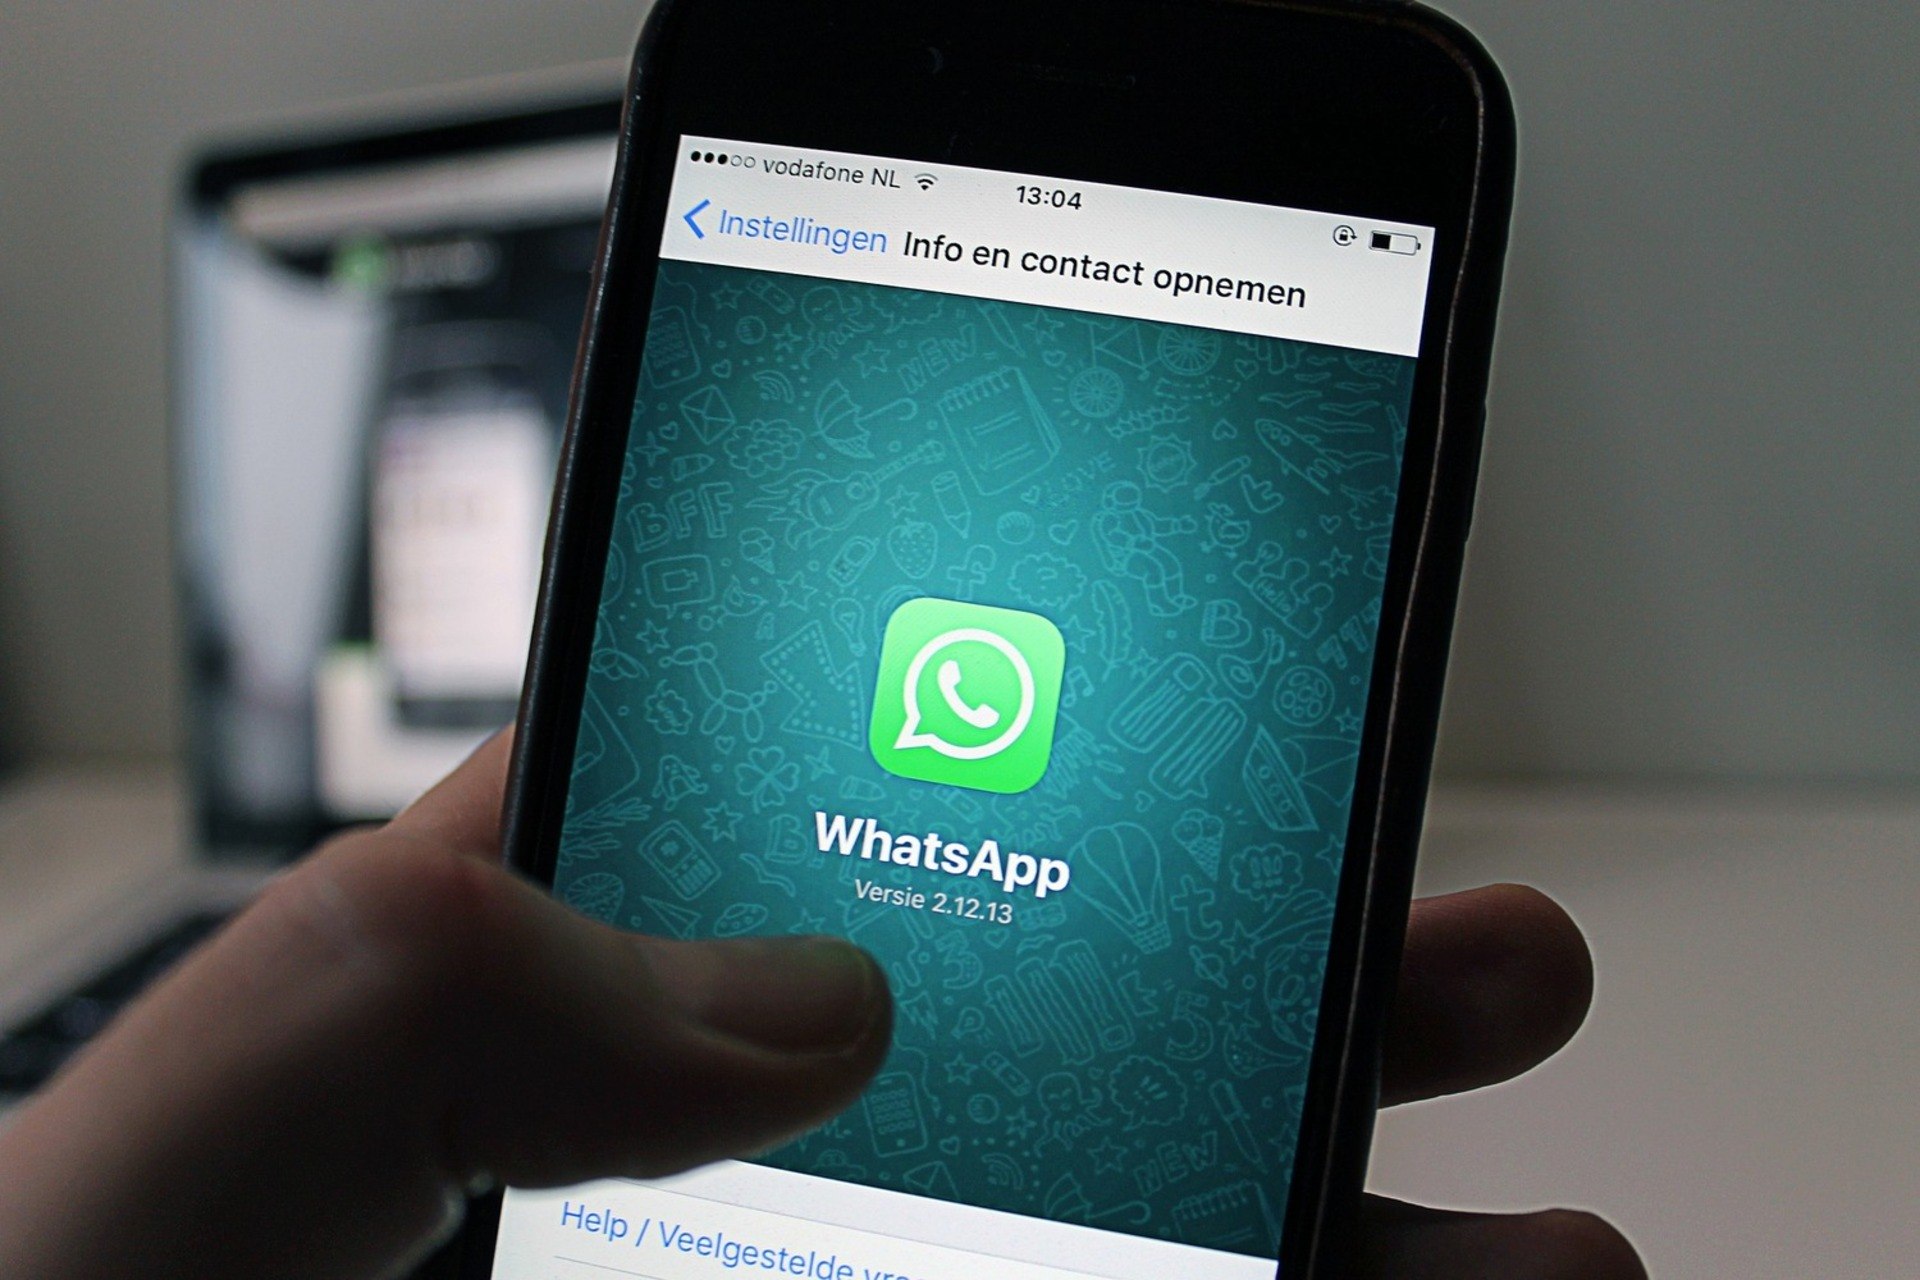 WhatsApp: Aprenda 7 truques para digitar muito mais rápido - Fotos - R7  Tecnologia e Ciência